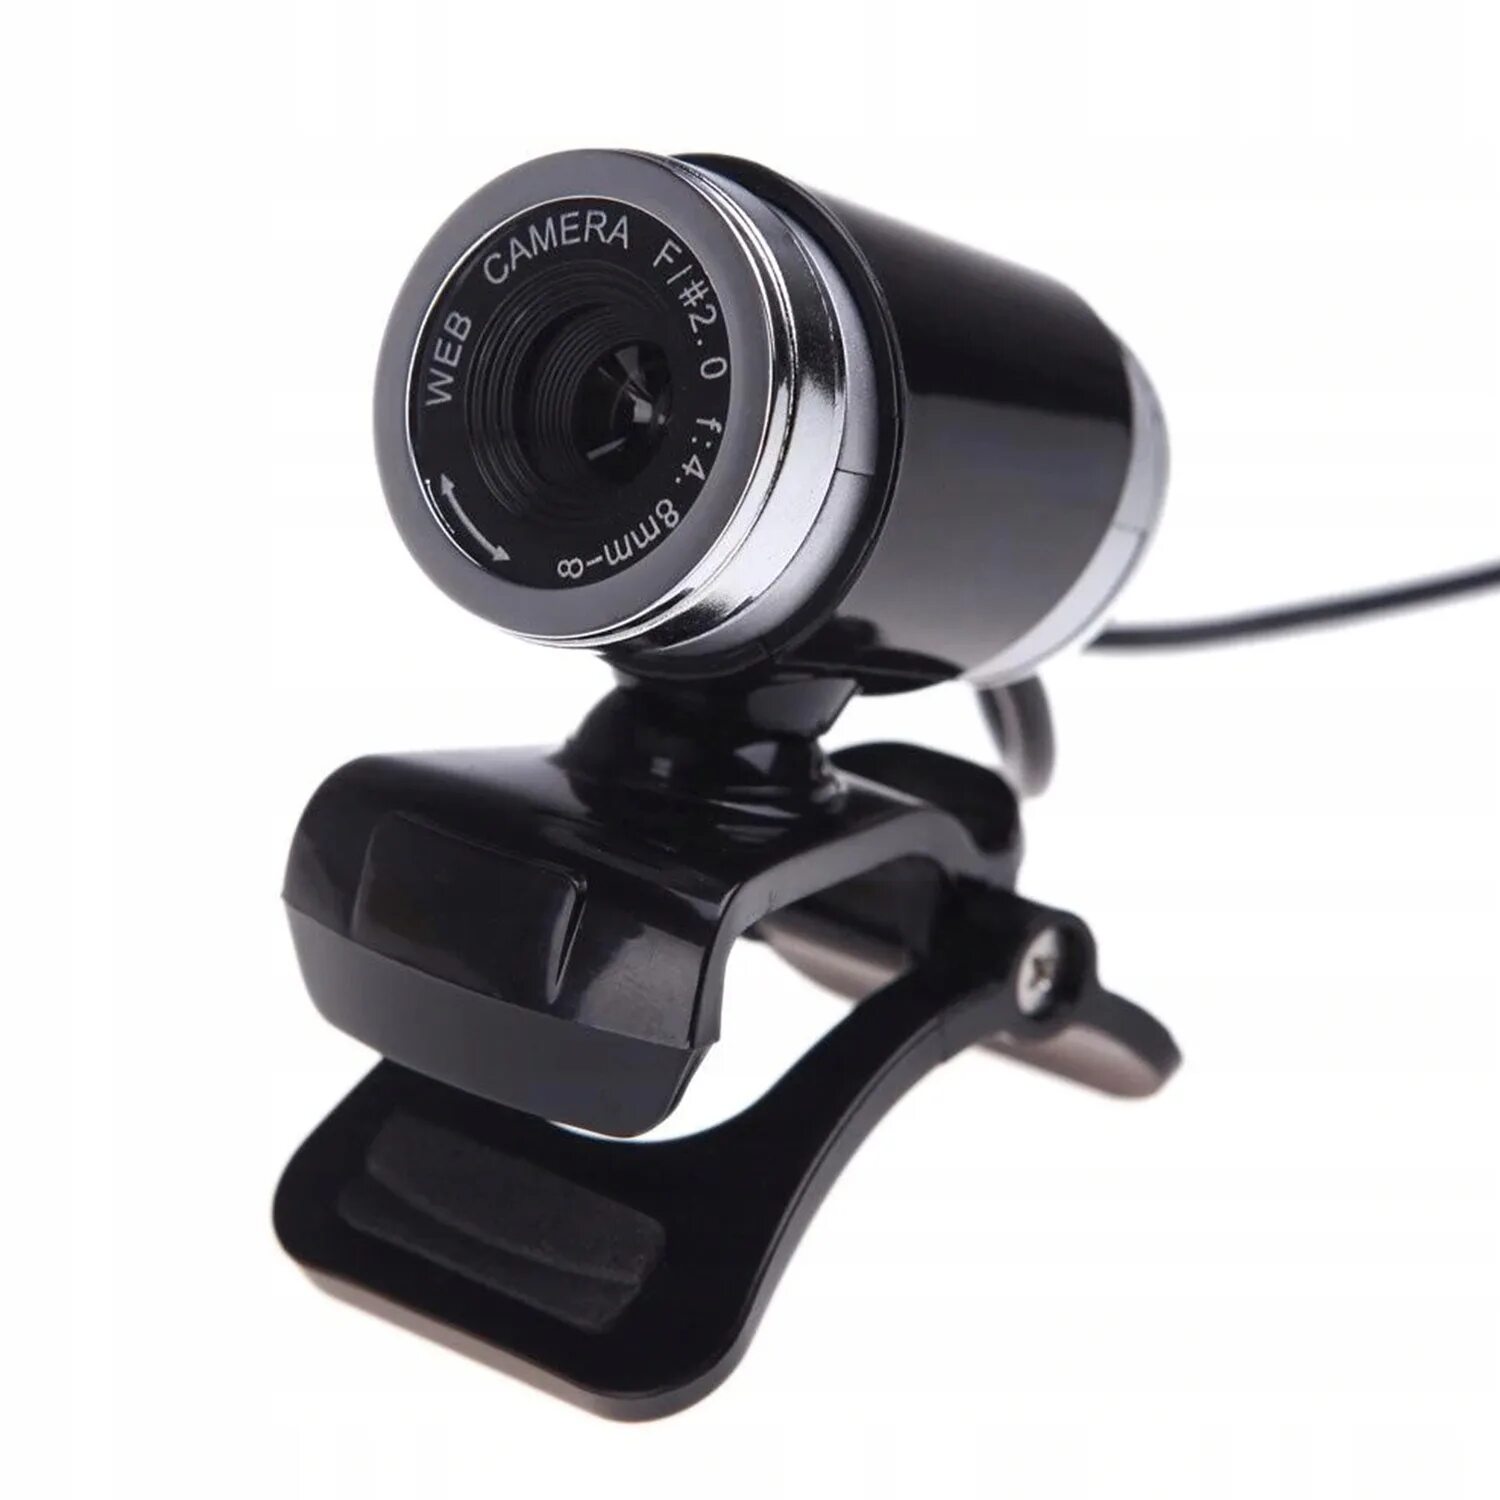 Веб-камера CBR CW-855hd Black. Cam USB 2.0 480p веб-камера с микрофоном. Веб-камера PC Camera USB 2.0 5.0 Megapixel. Веб-камера Ritmix 5 Megapixel.